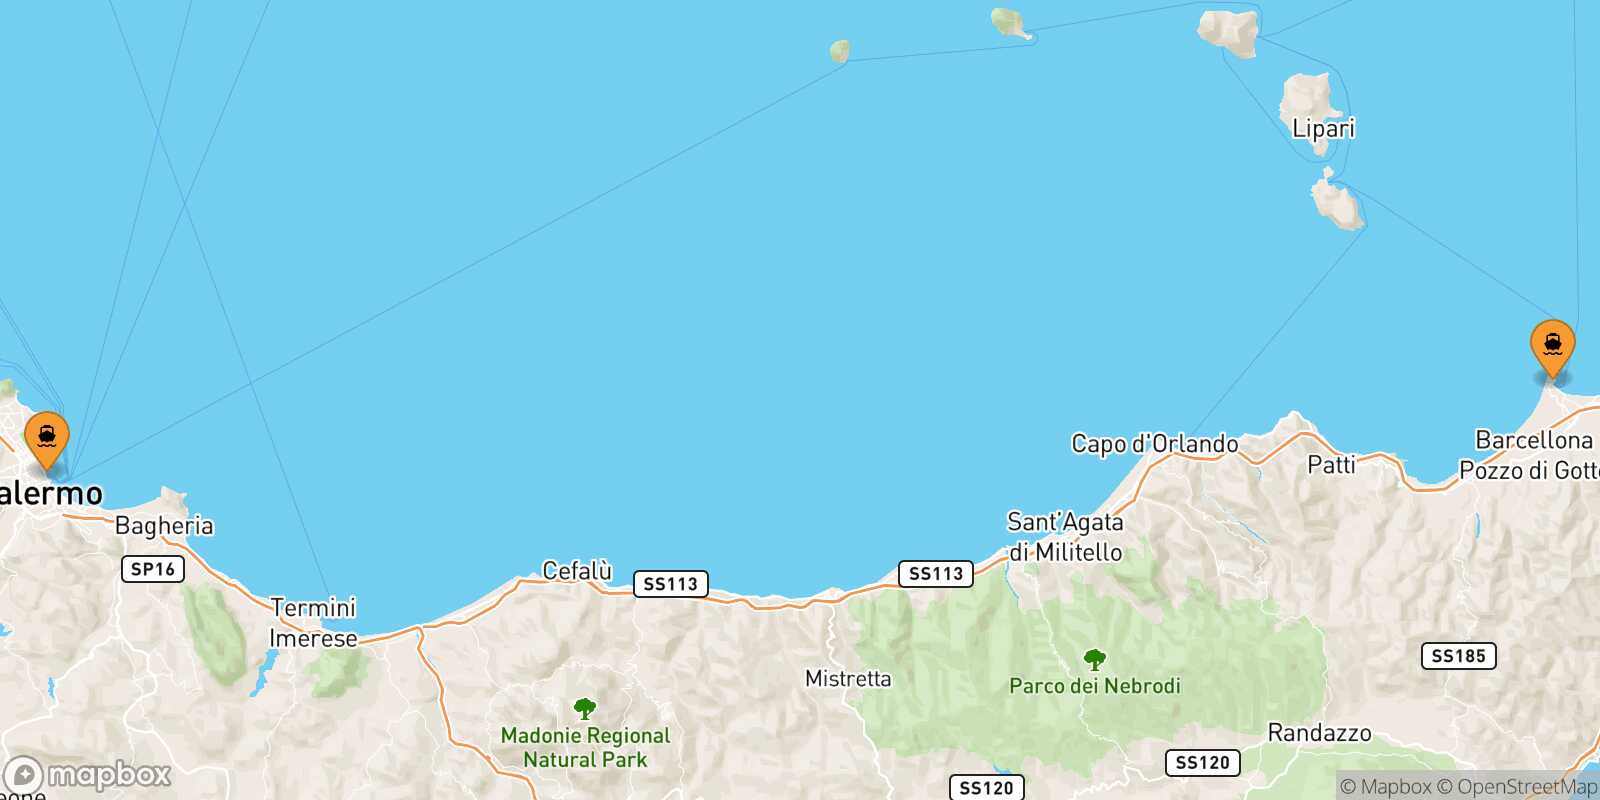 Mappa dei porti collegati con  Messina